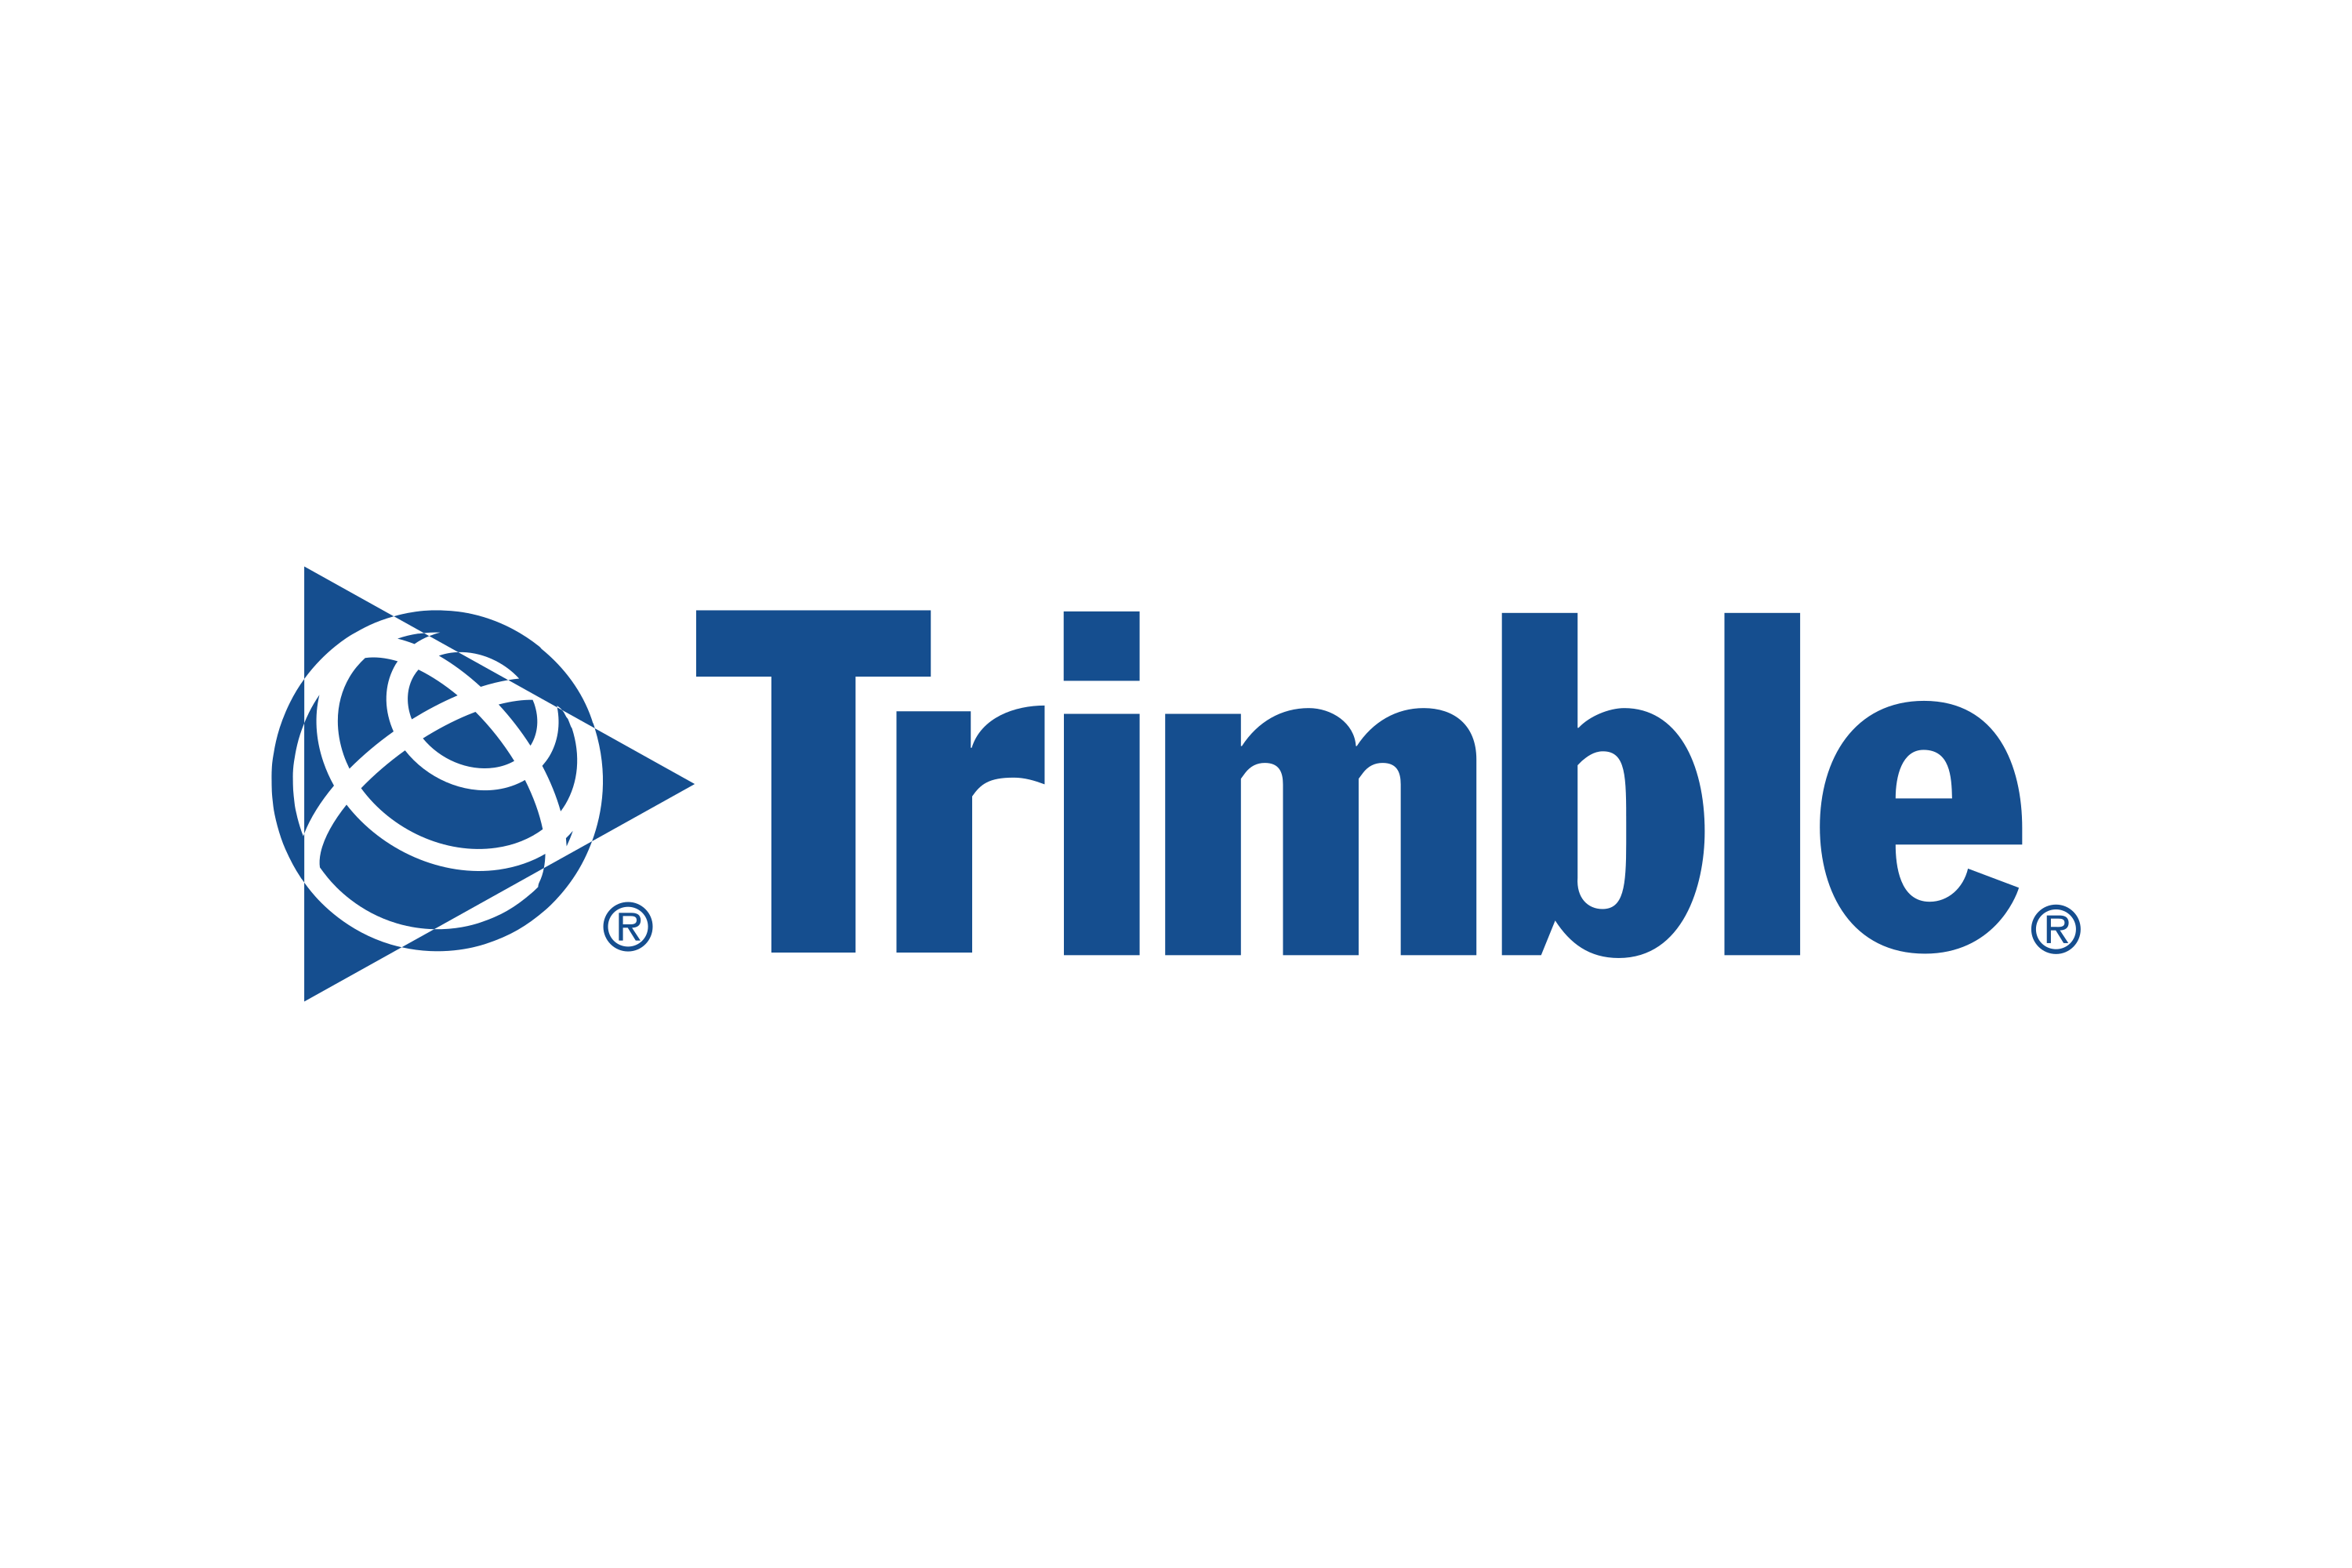 Download Trimble Navigation Logo in SVG Vector or PNG File Format